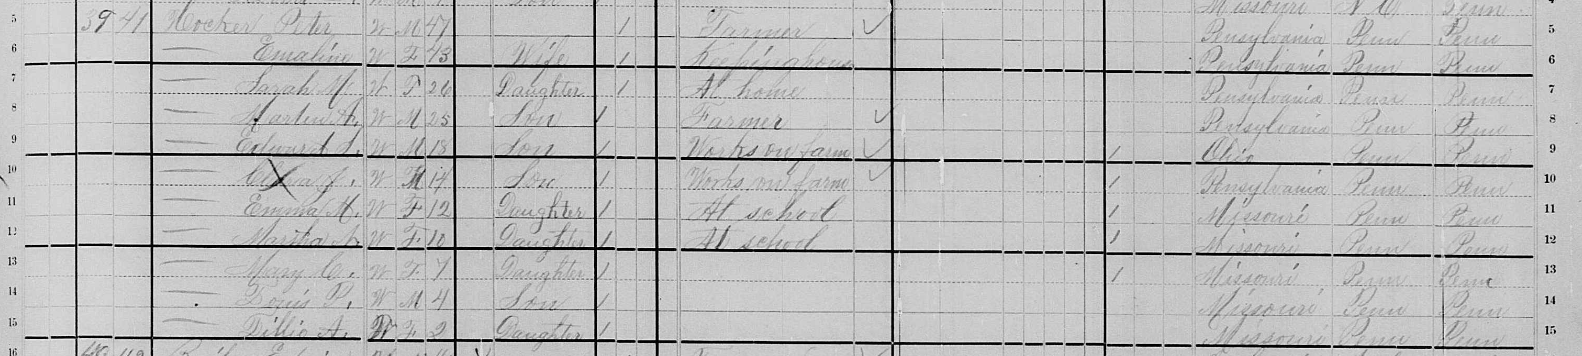 1880 Peter Hocker census record